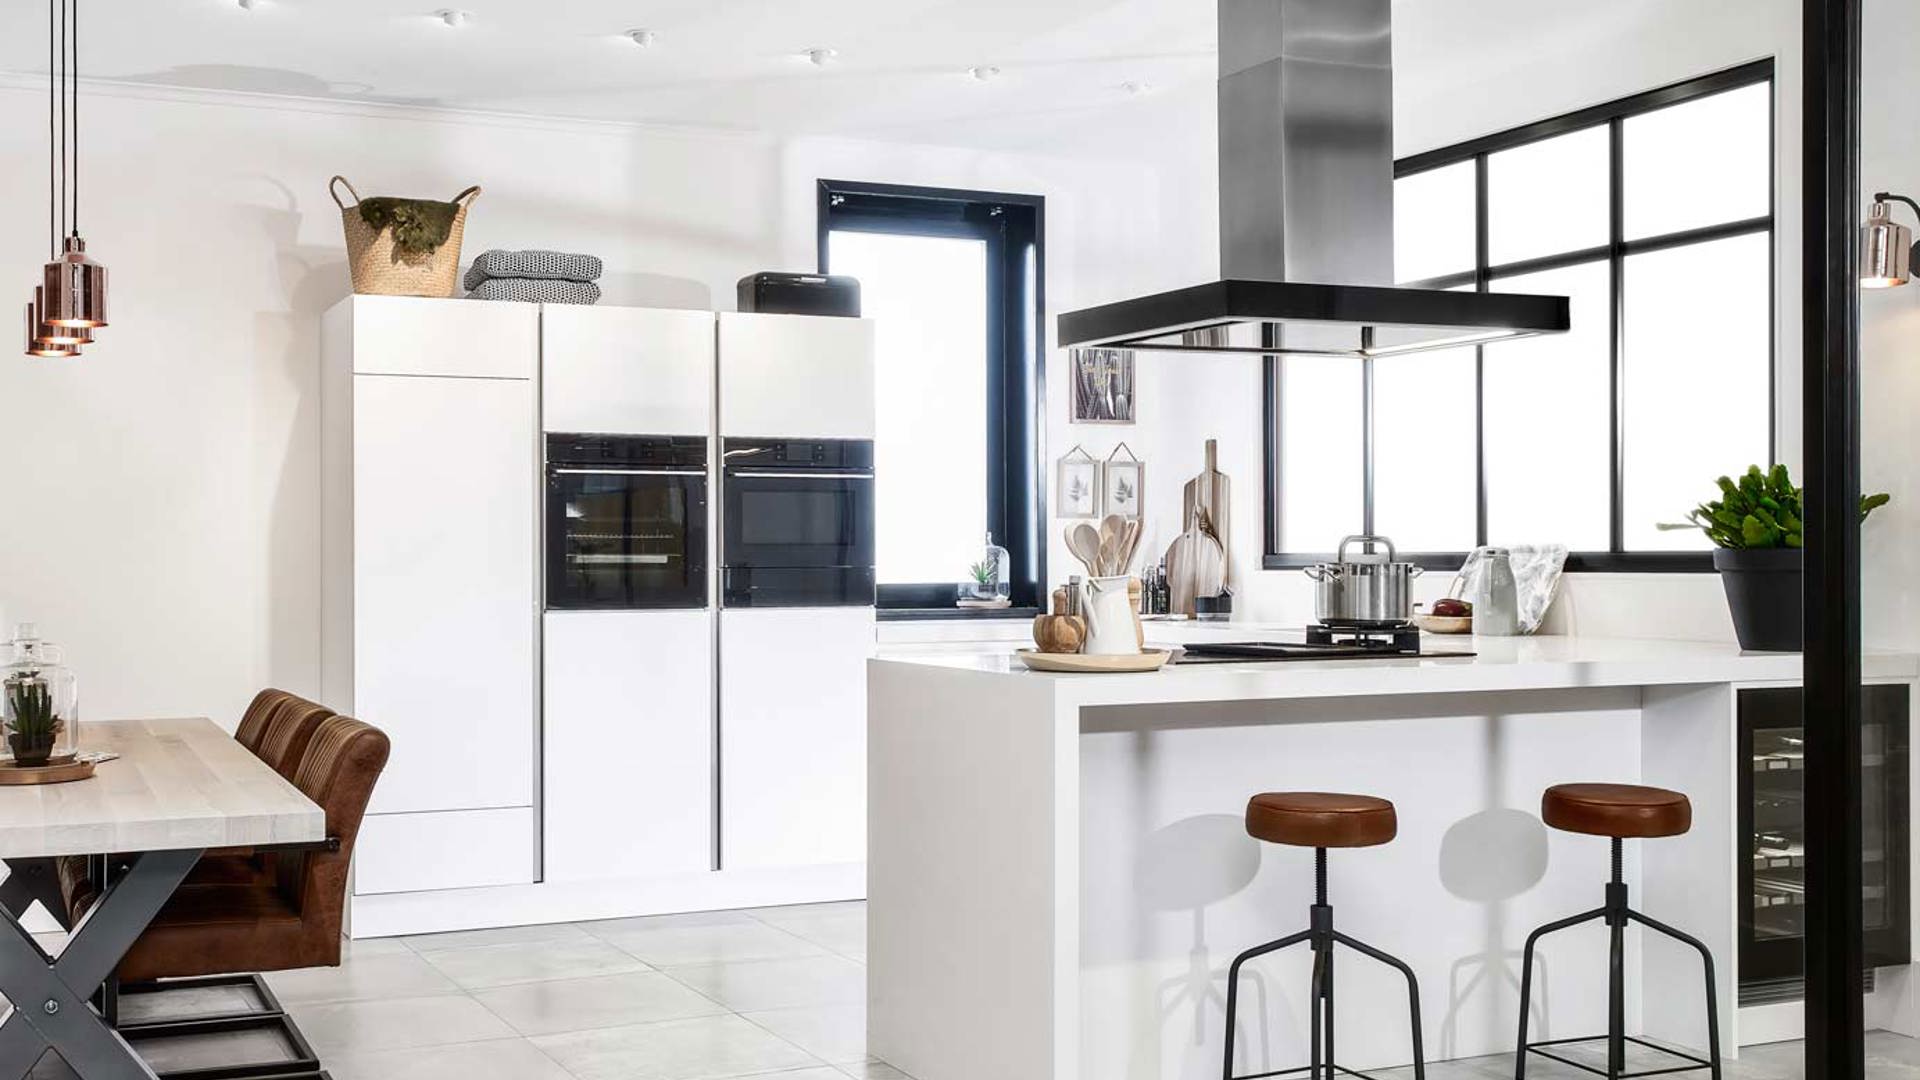 Deze luxe u-keuken heeft een moderne stijl en is uitgevoerd in de kleur mat wit